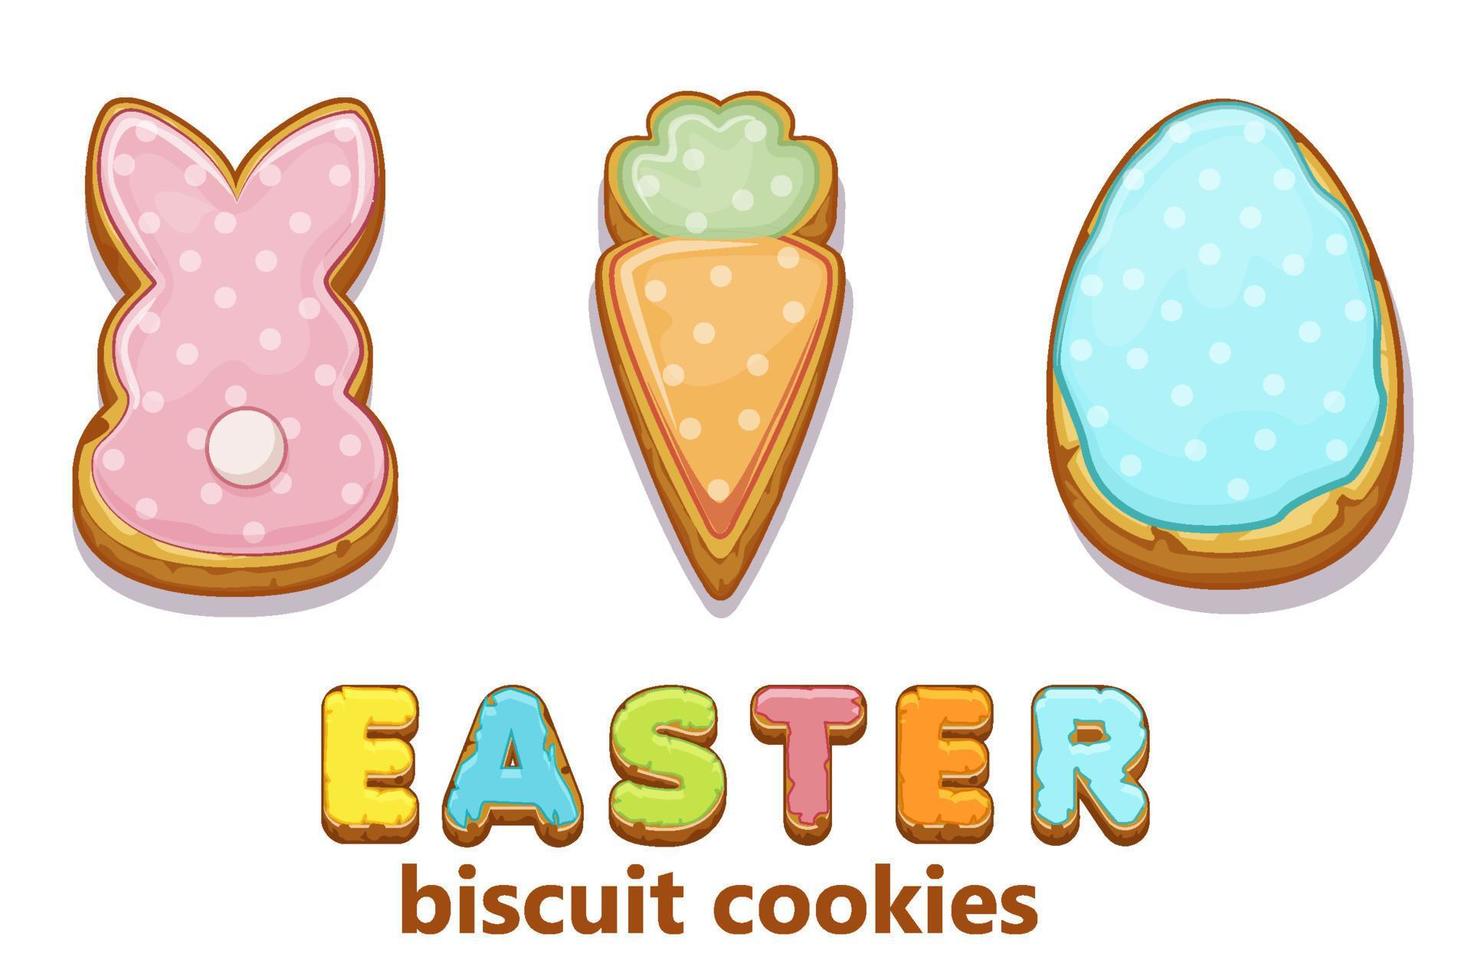 gelukkig Pasen met schattig konijntjes en ei biscuit koekjes. vector illustratie vakantie groet met wortel koekjes en inscriptie.